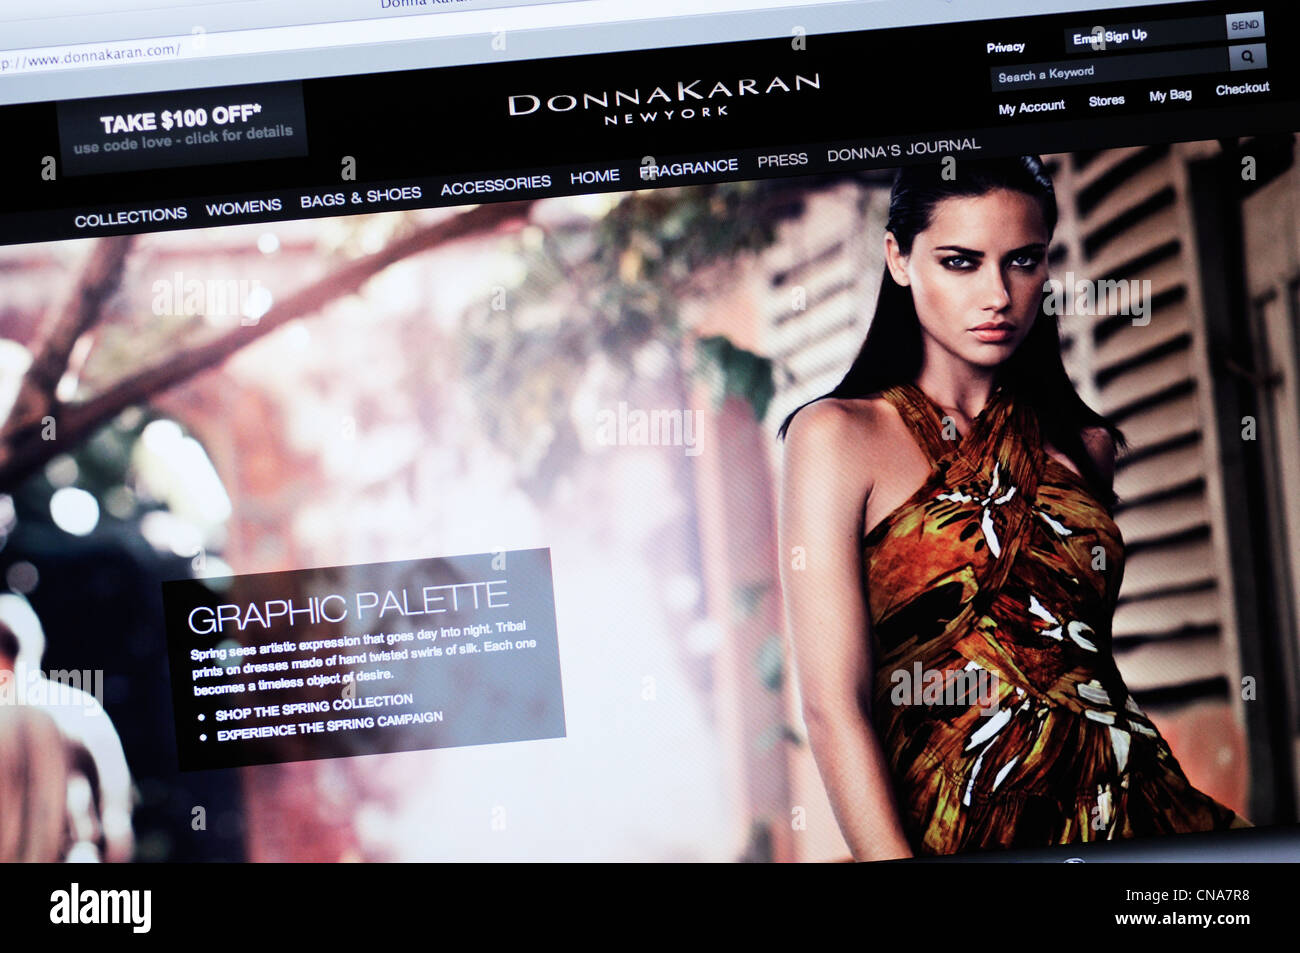 Donna karan apparel website hi-res stock photography and images - Alamy